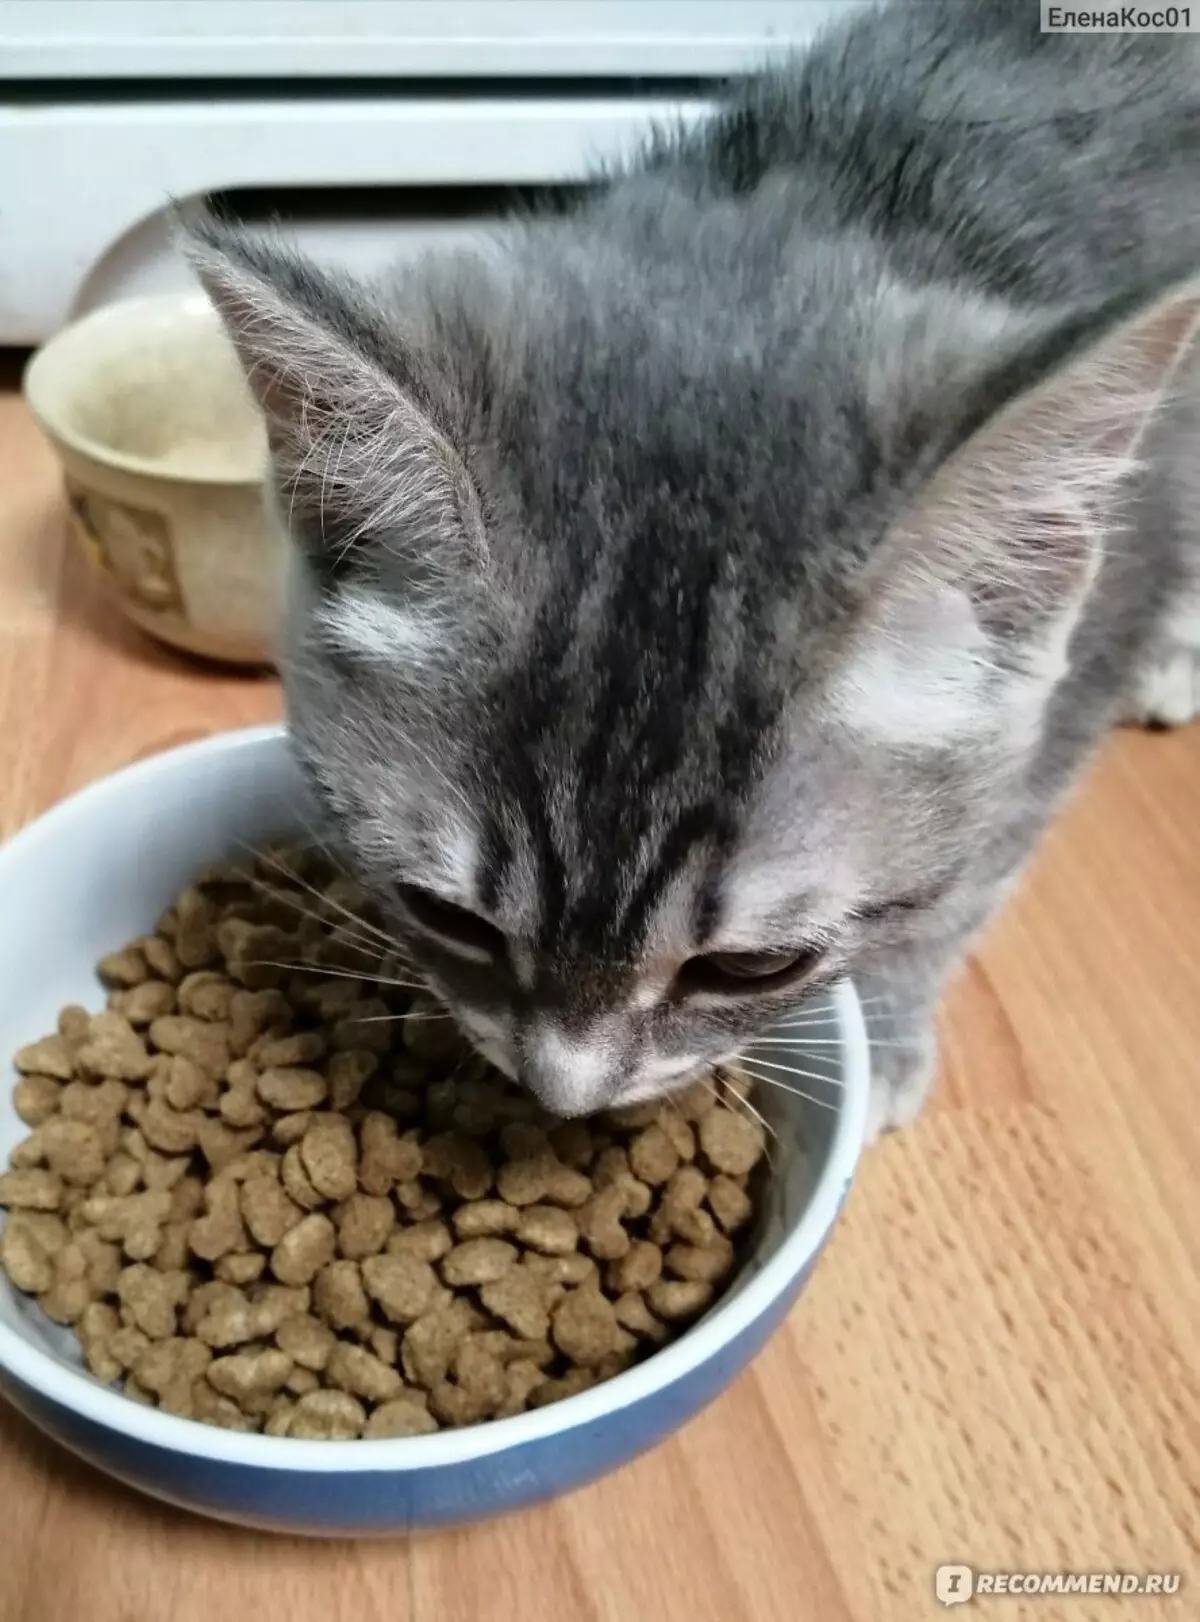 Котешка храна Darling: Feline суха храна от Purina в опаковки 2 кг и 10 кг, различни видове, състав и рецензии 22732_22